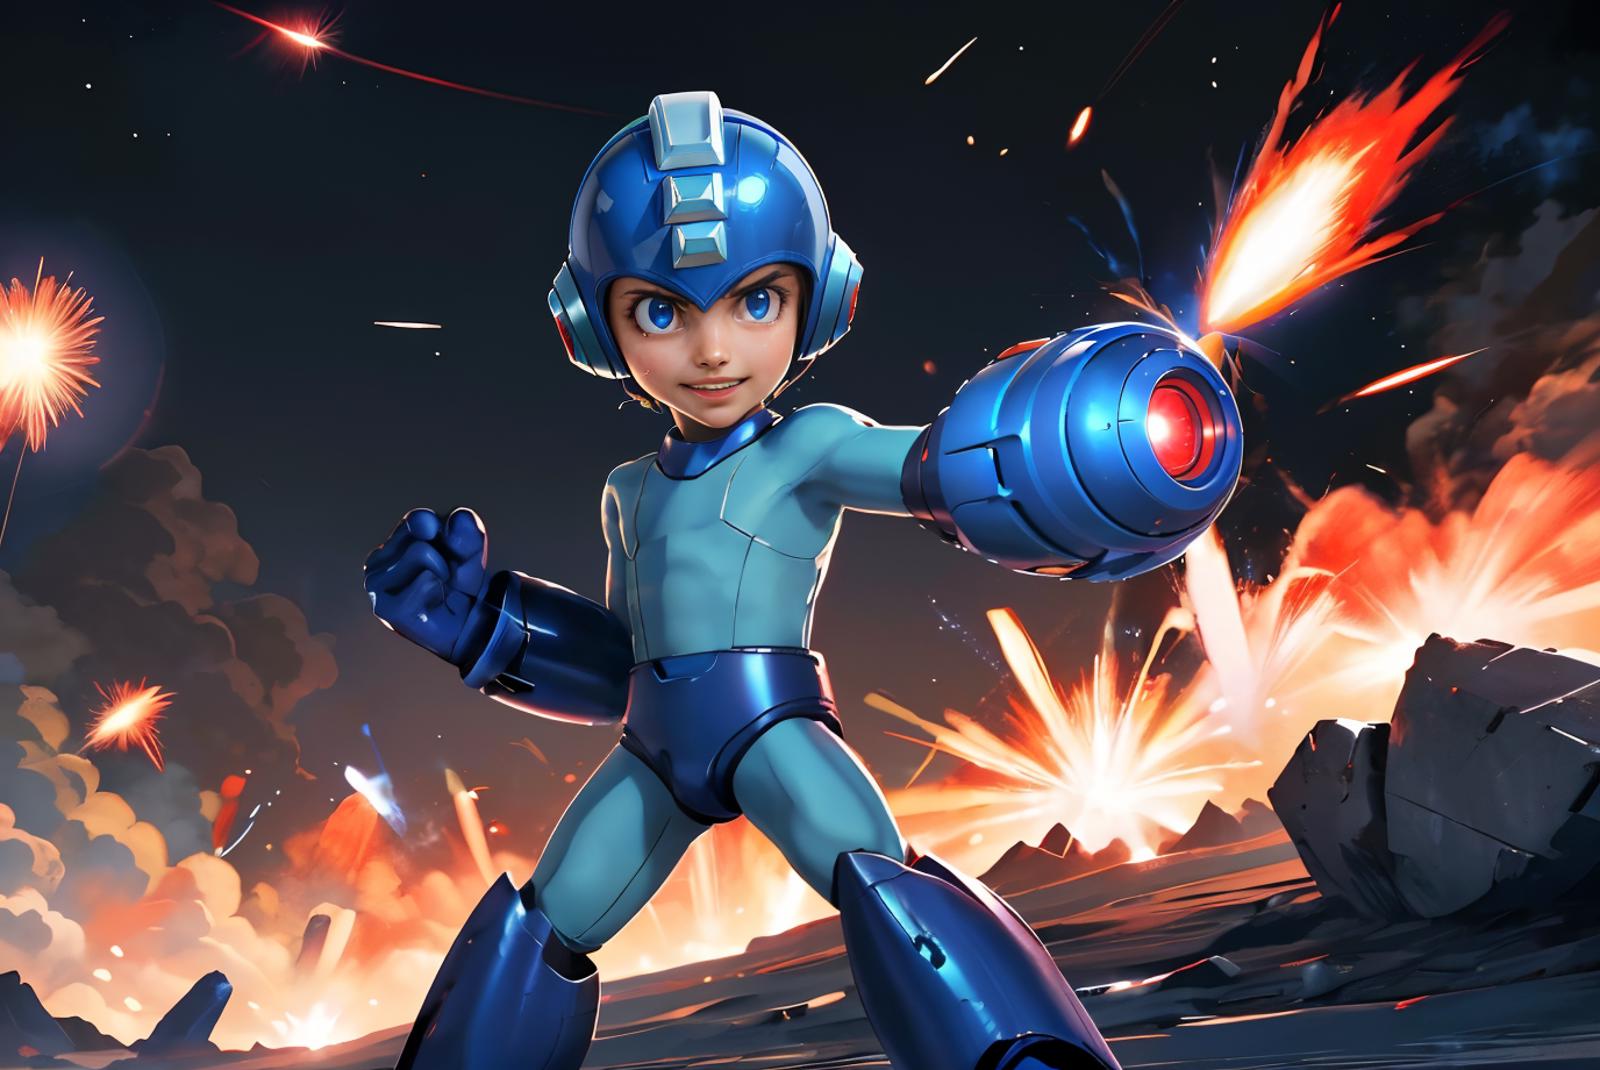 Megaman [ Mega Man] image by wikkitikki